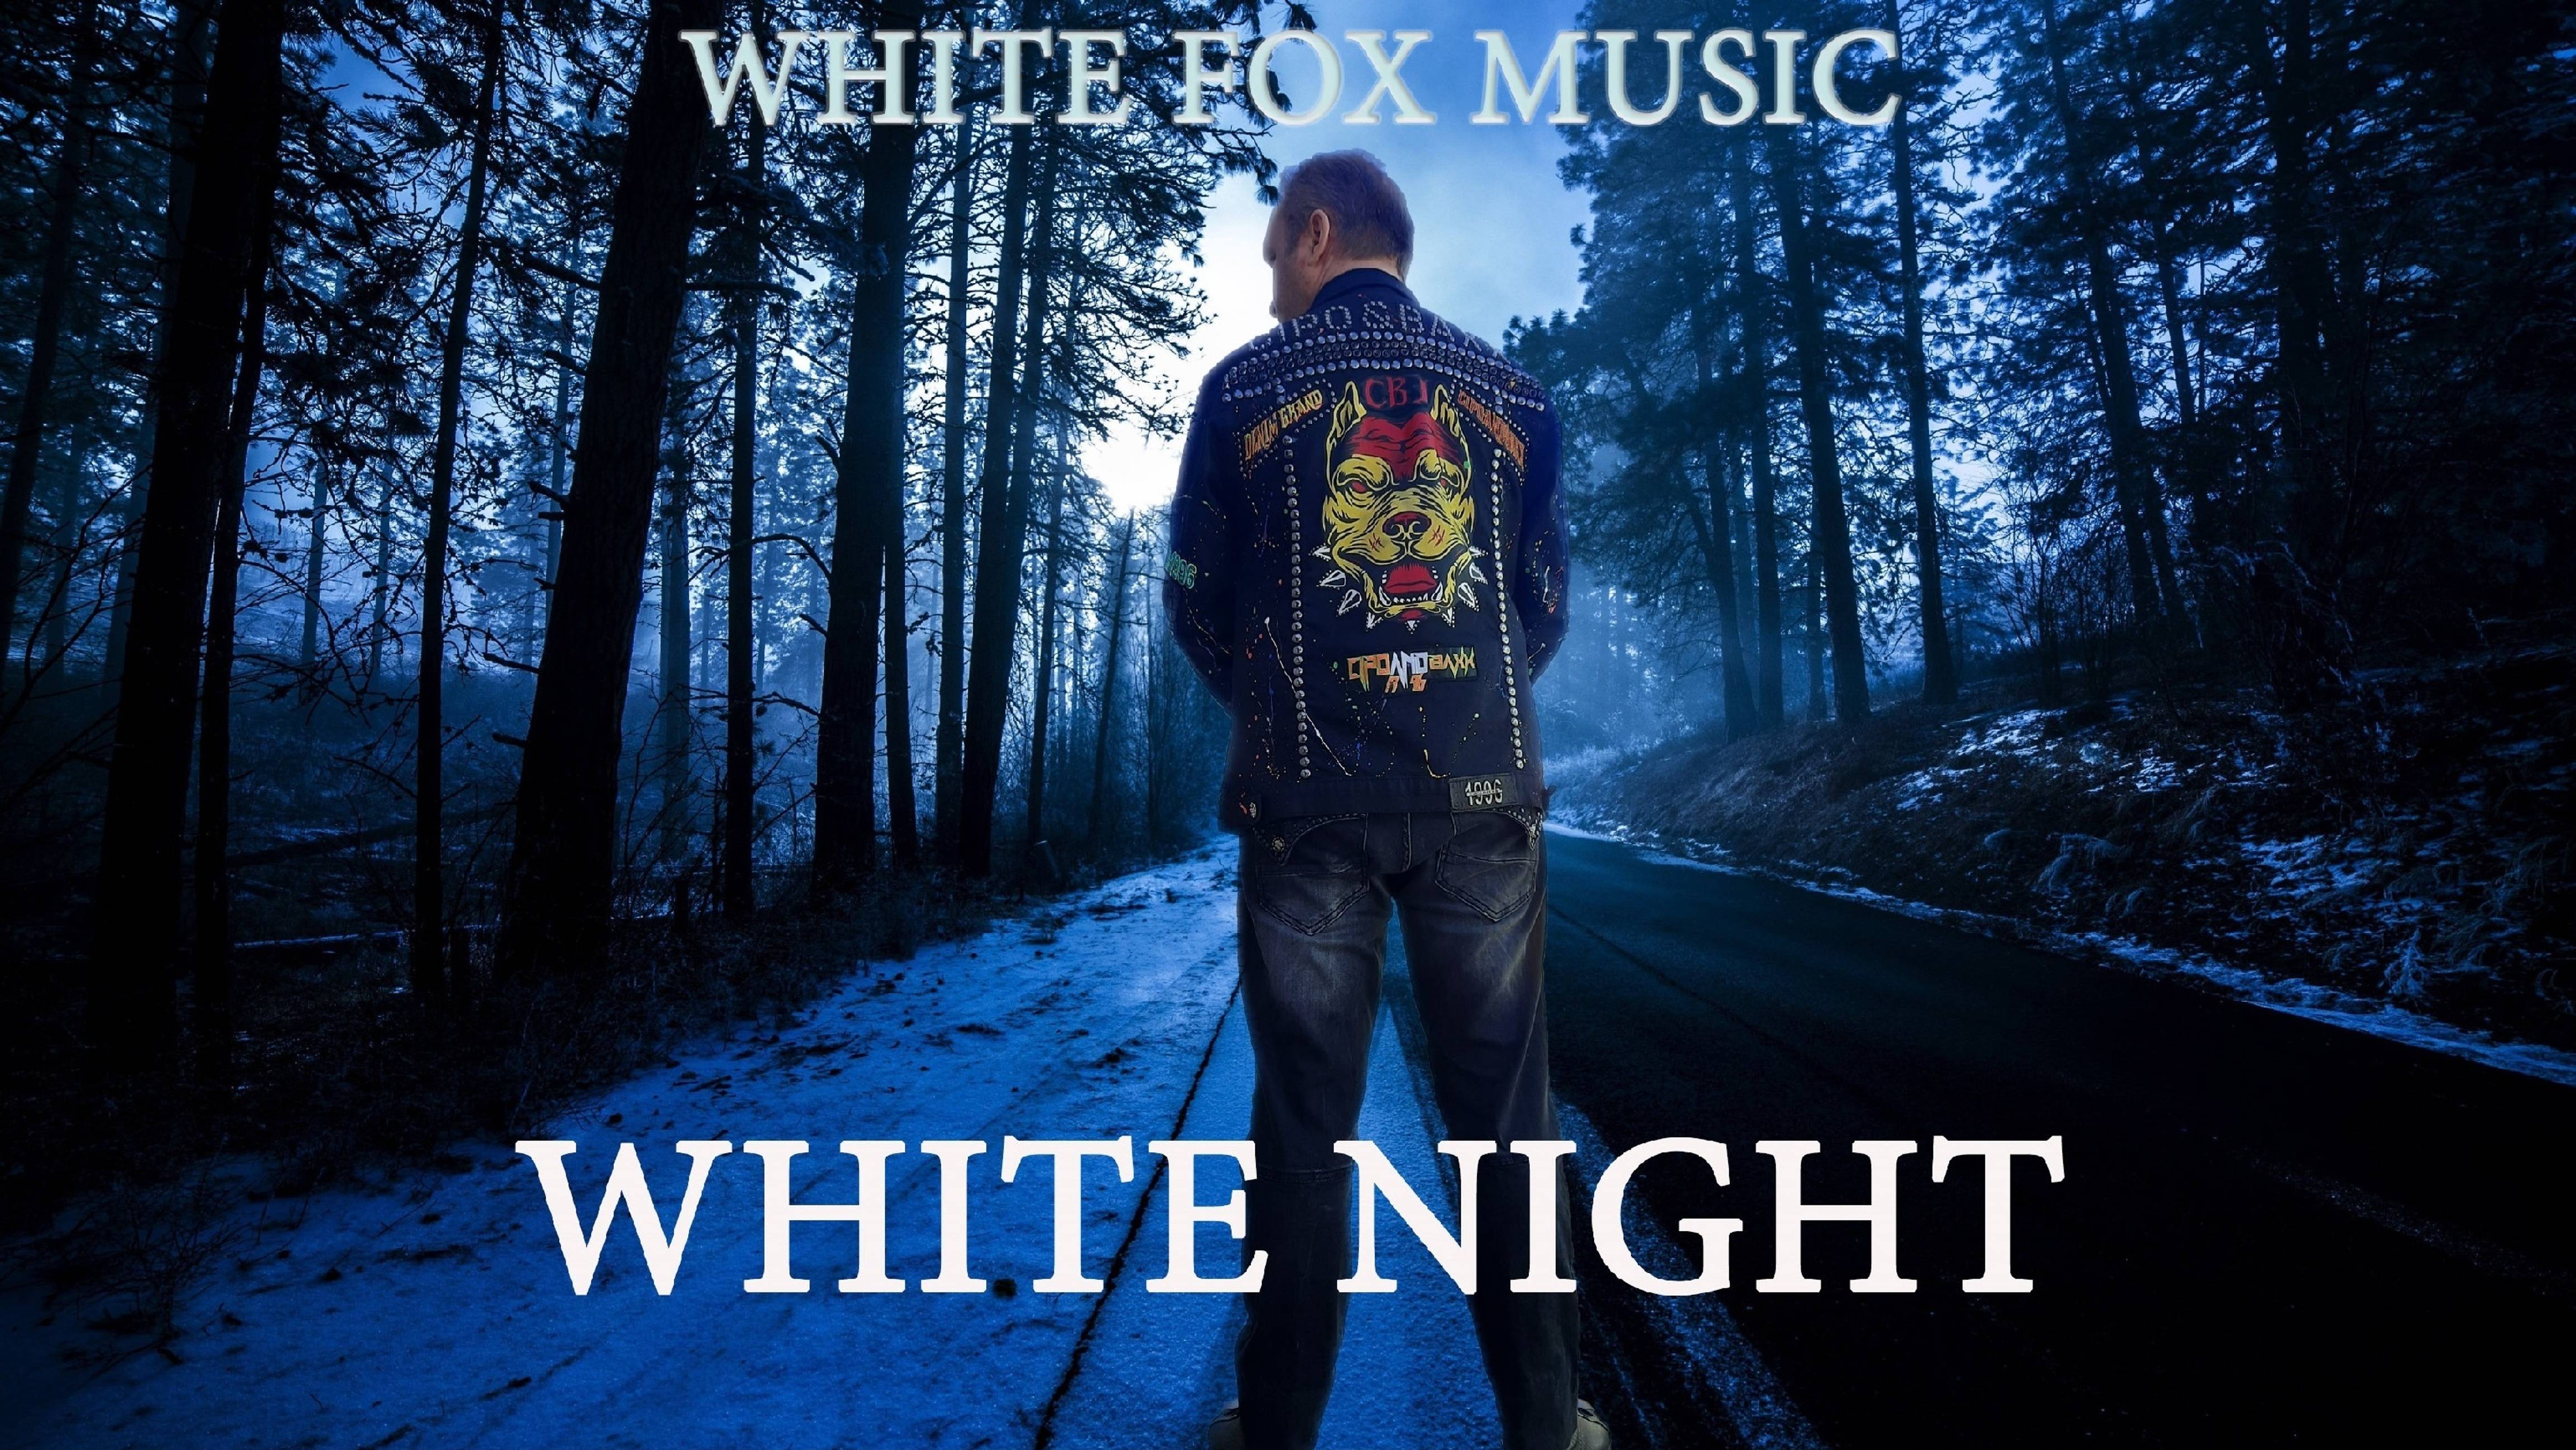 White Fox Music - White Night